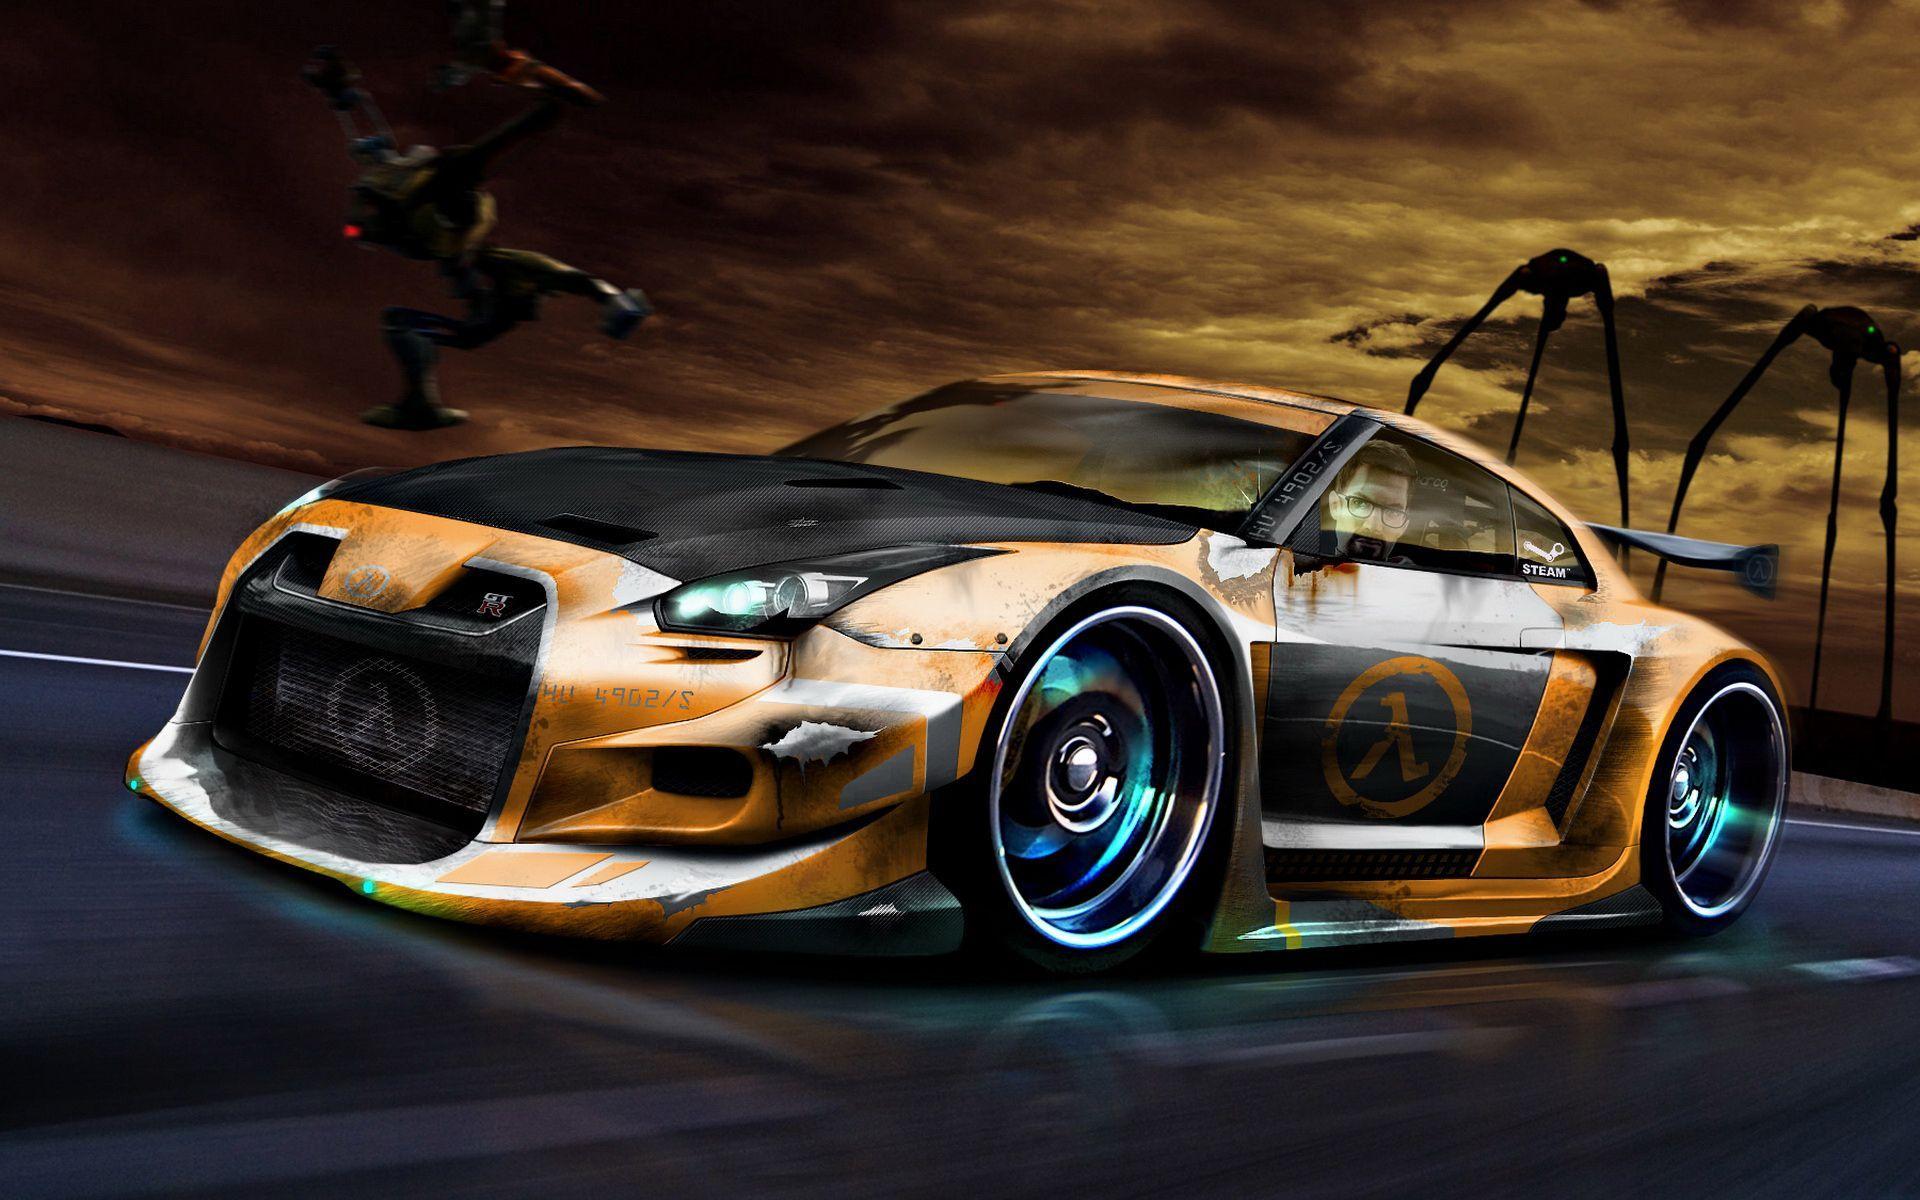 street racing car pics. Cool sports car wallpaper Auto desktop background. Cool car wallpaper hd, Cool car picture, Sports car wallpaper